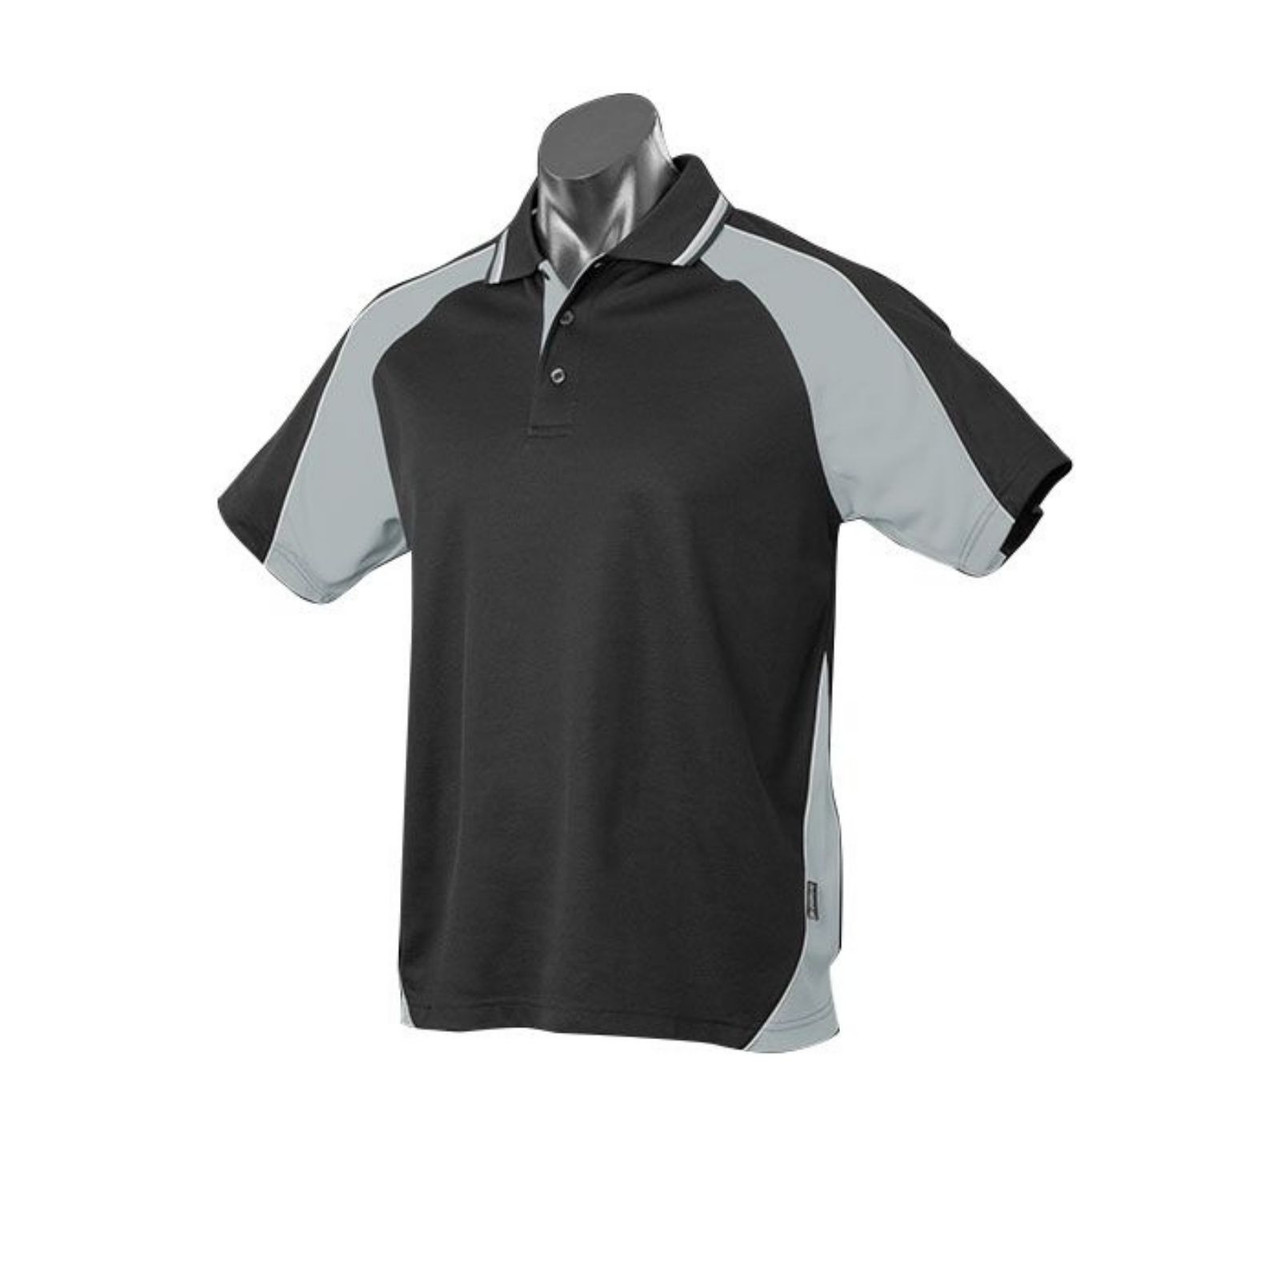 Mens Tri Colour DriWear Polo Shirt | Shop Blank Team Sports Wear Online